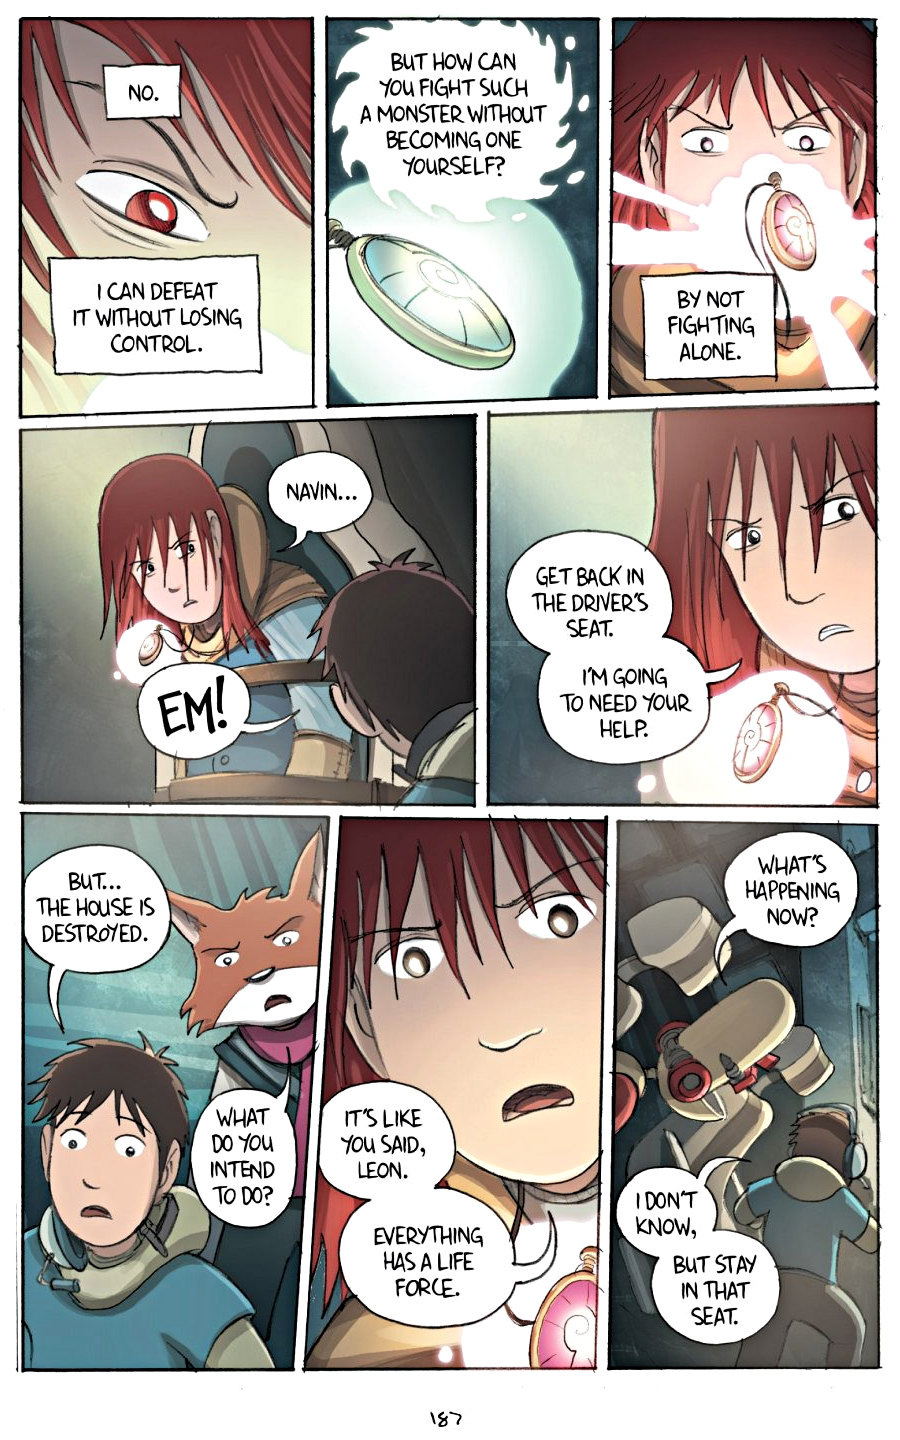 page 187 of amulet 2 stonekeeper's curse graphic novel by kazu kibuishi